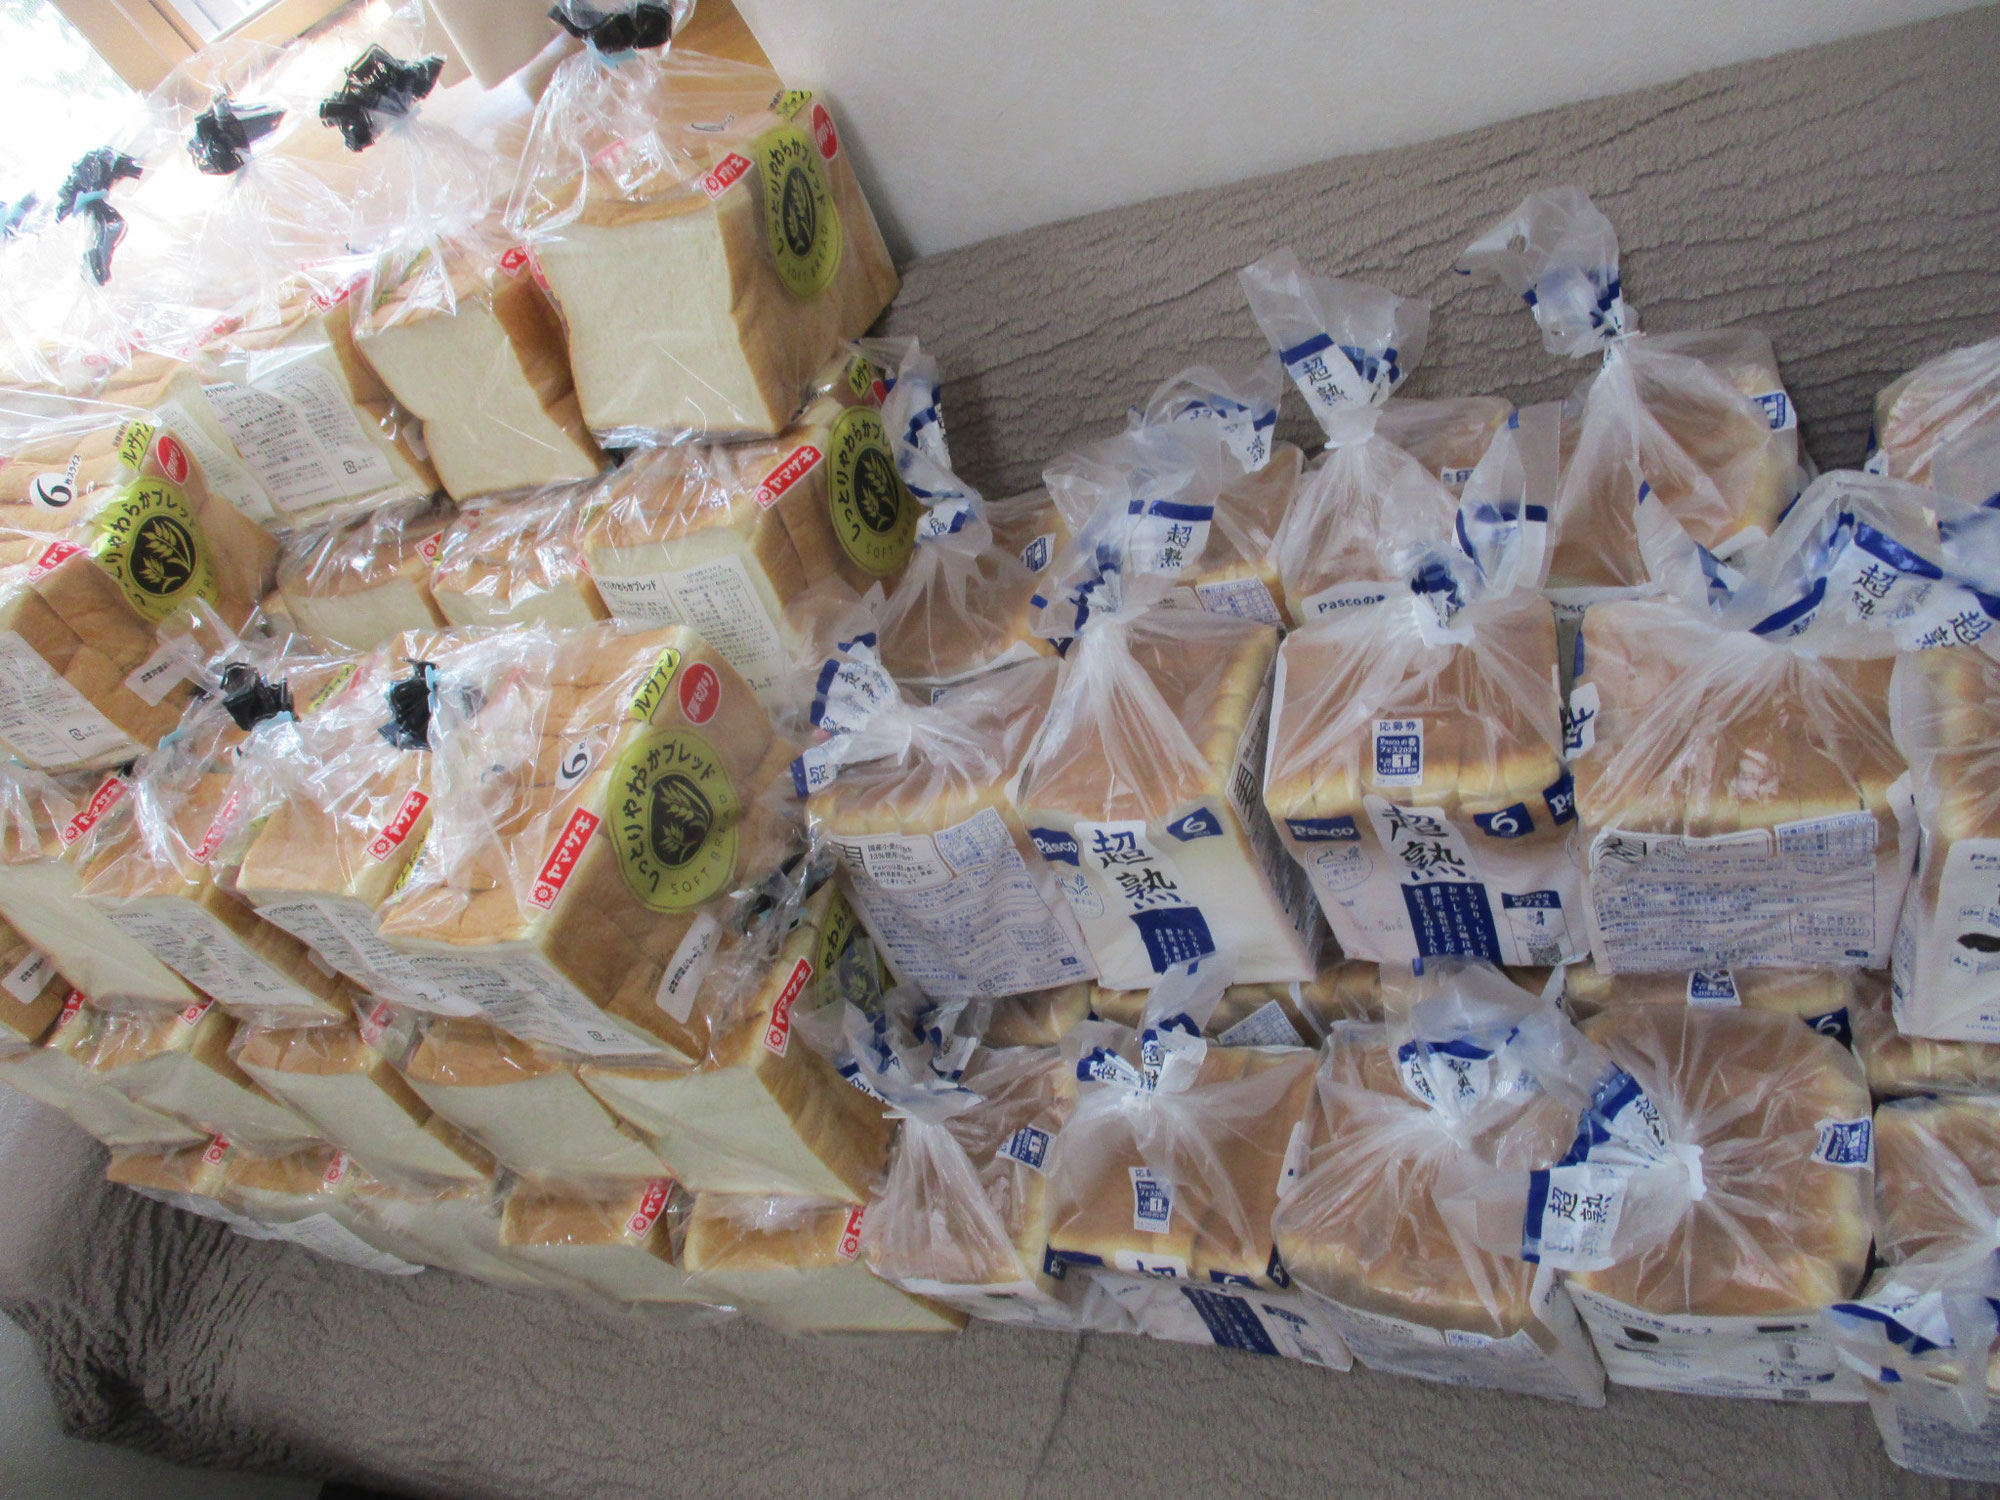 コストコジャパン様よりパンをご寄贈いただきました。